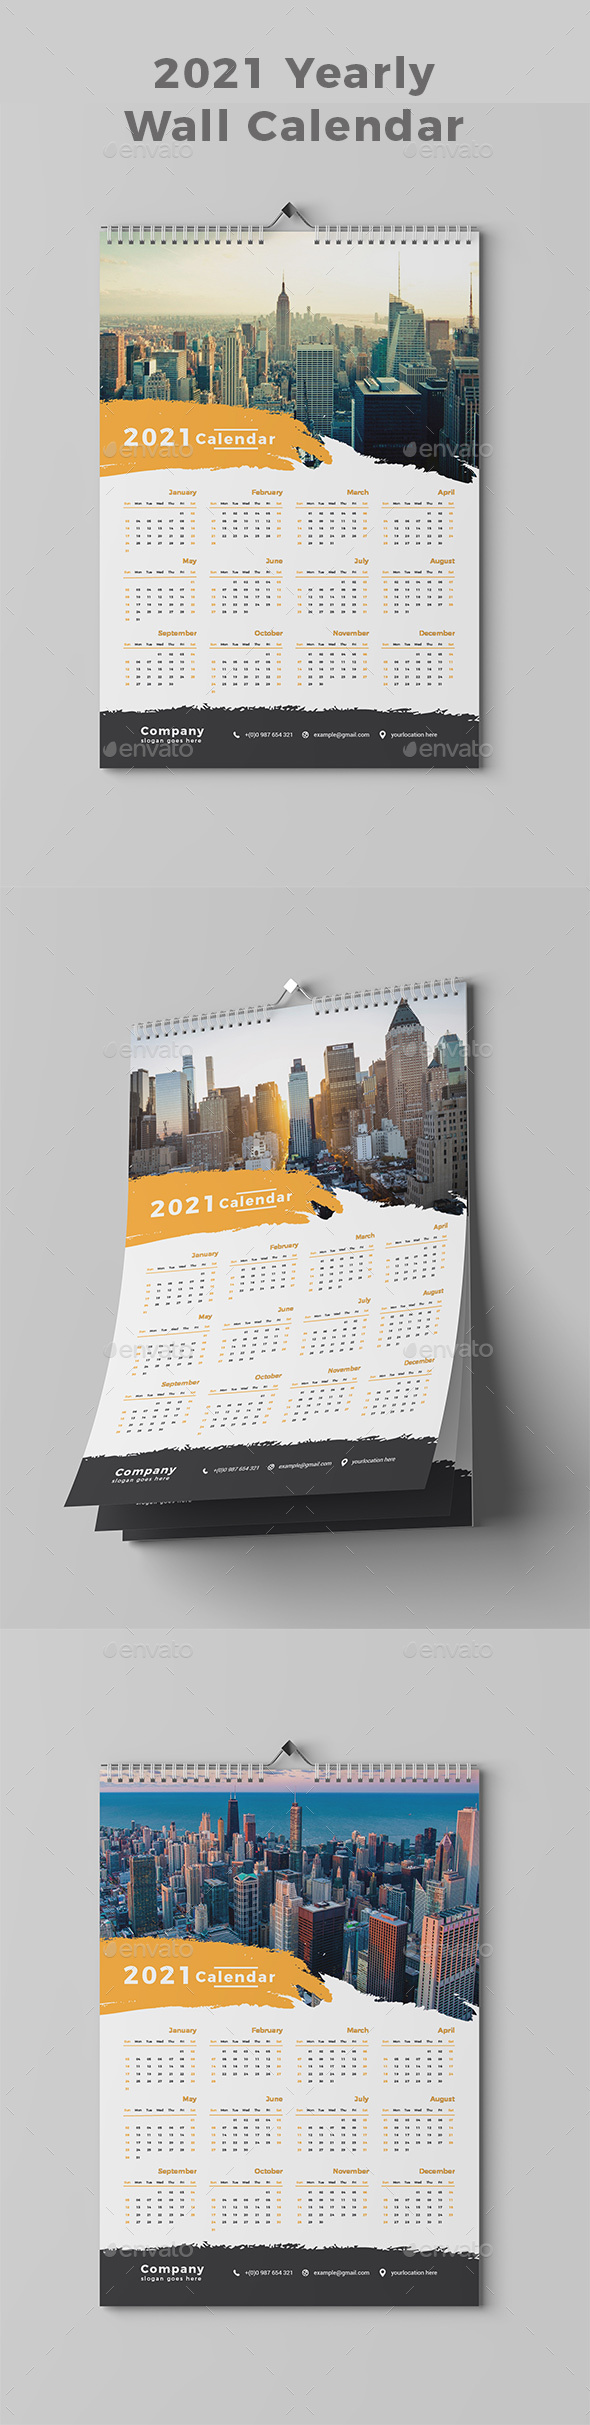 Wall Calendar 2021